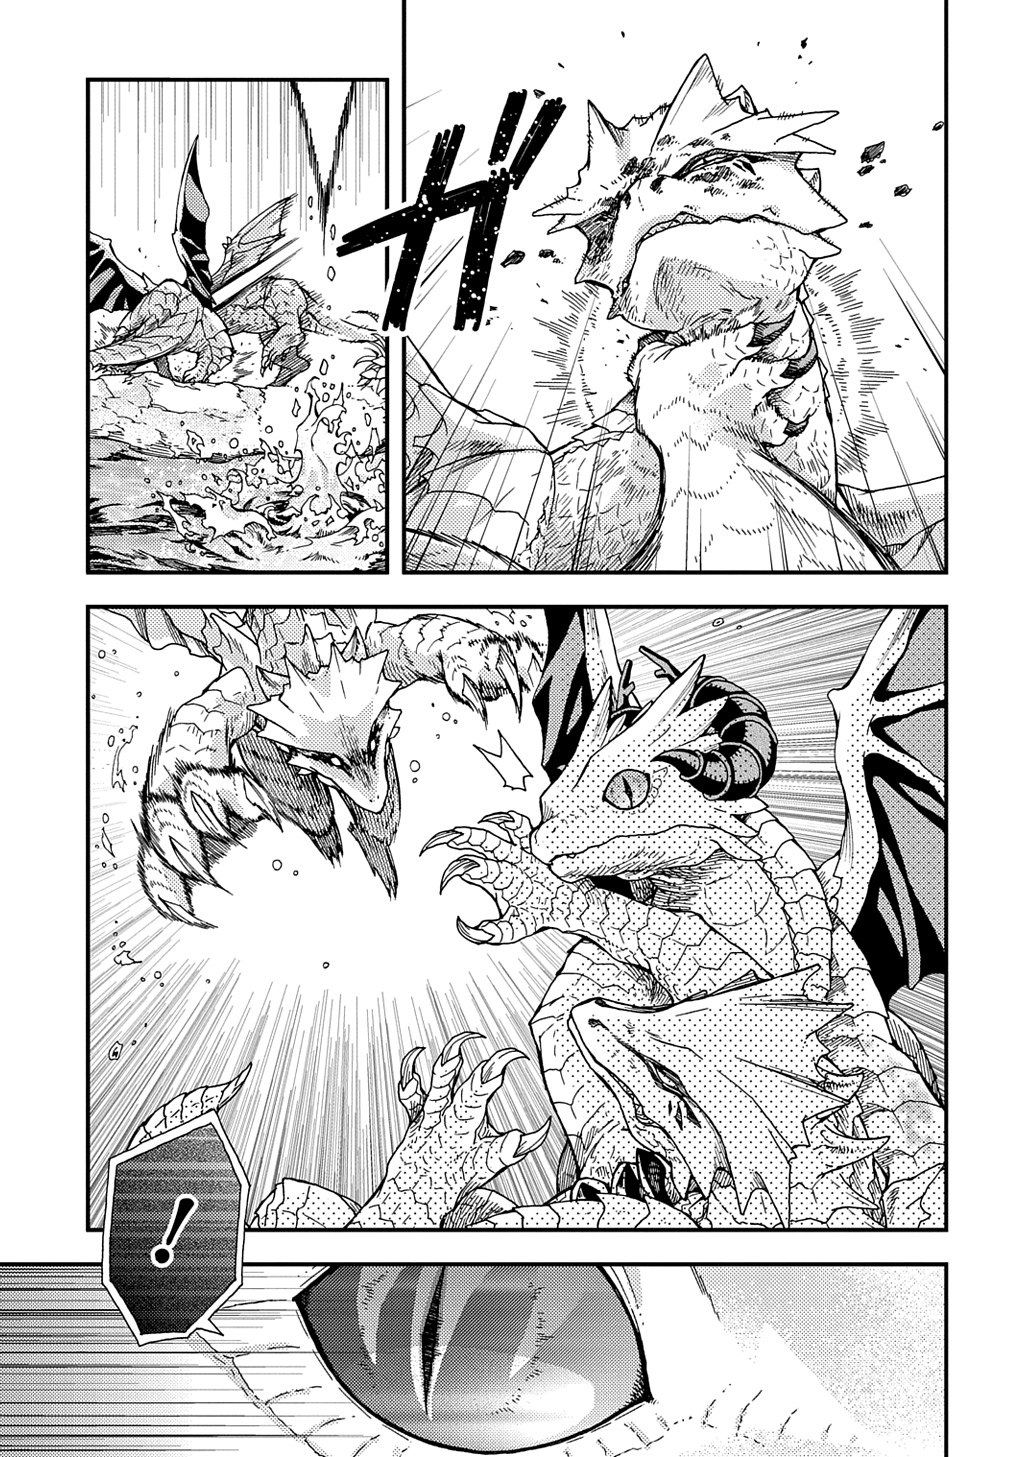 Hone Dragon no Mana Musume - Chapter 30.2 - Page 3